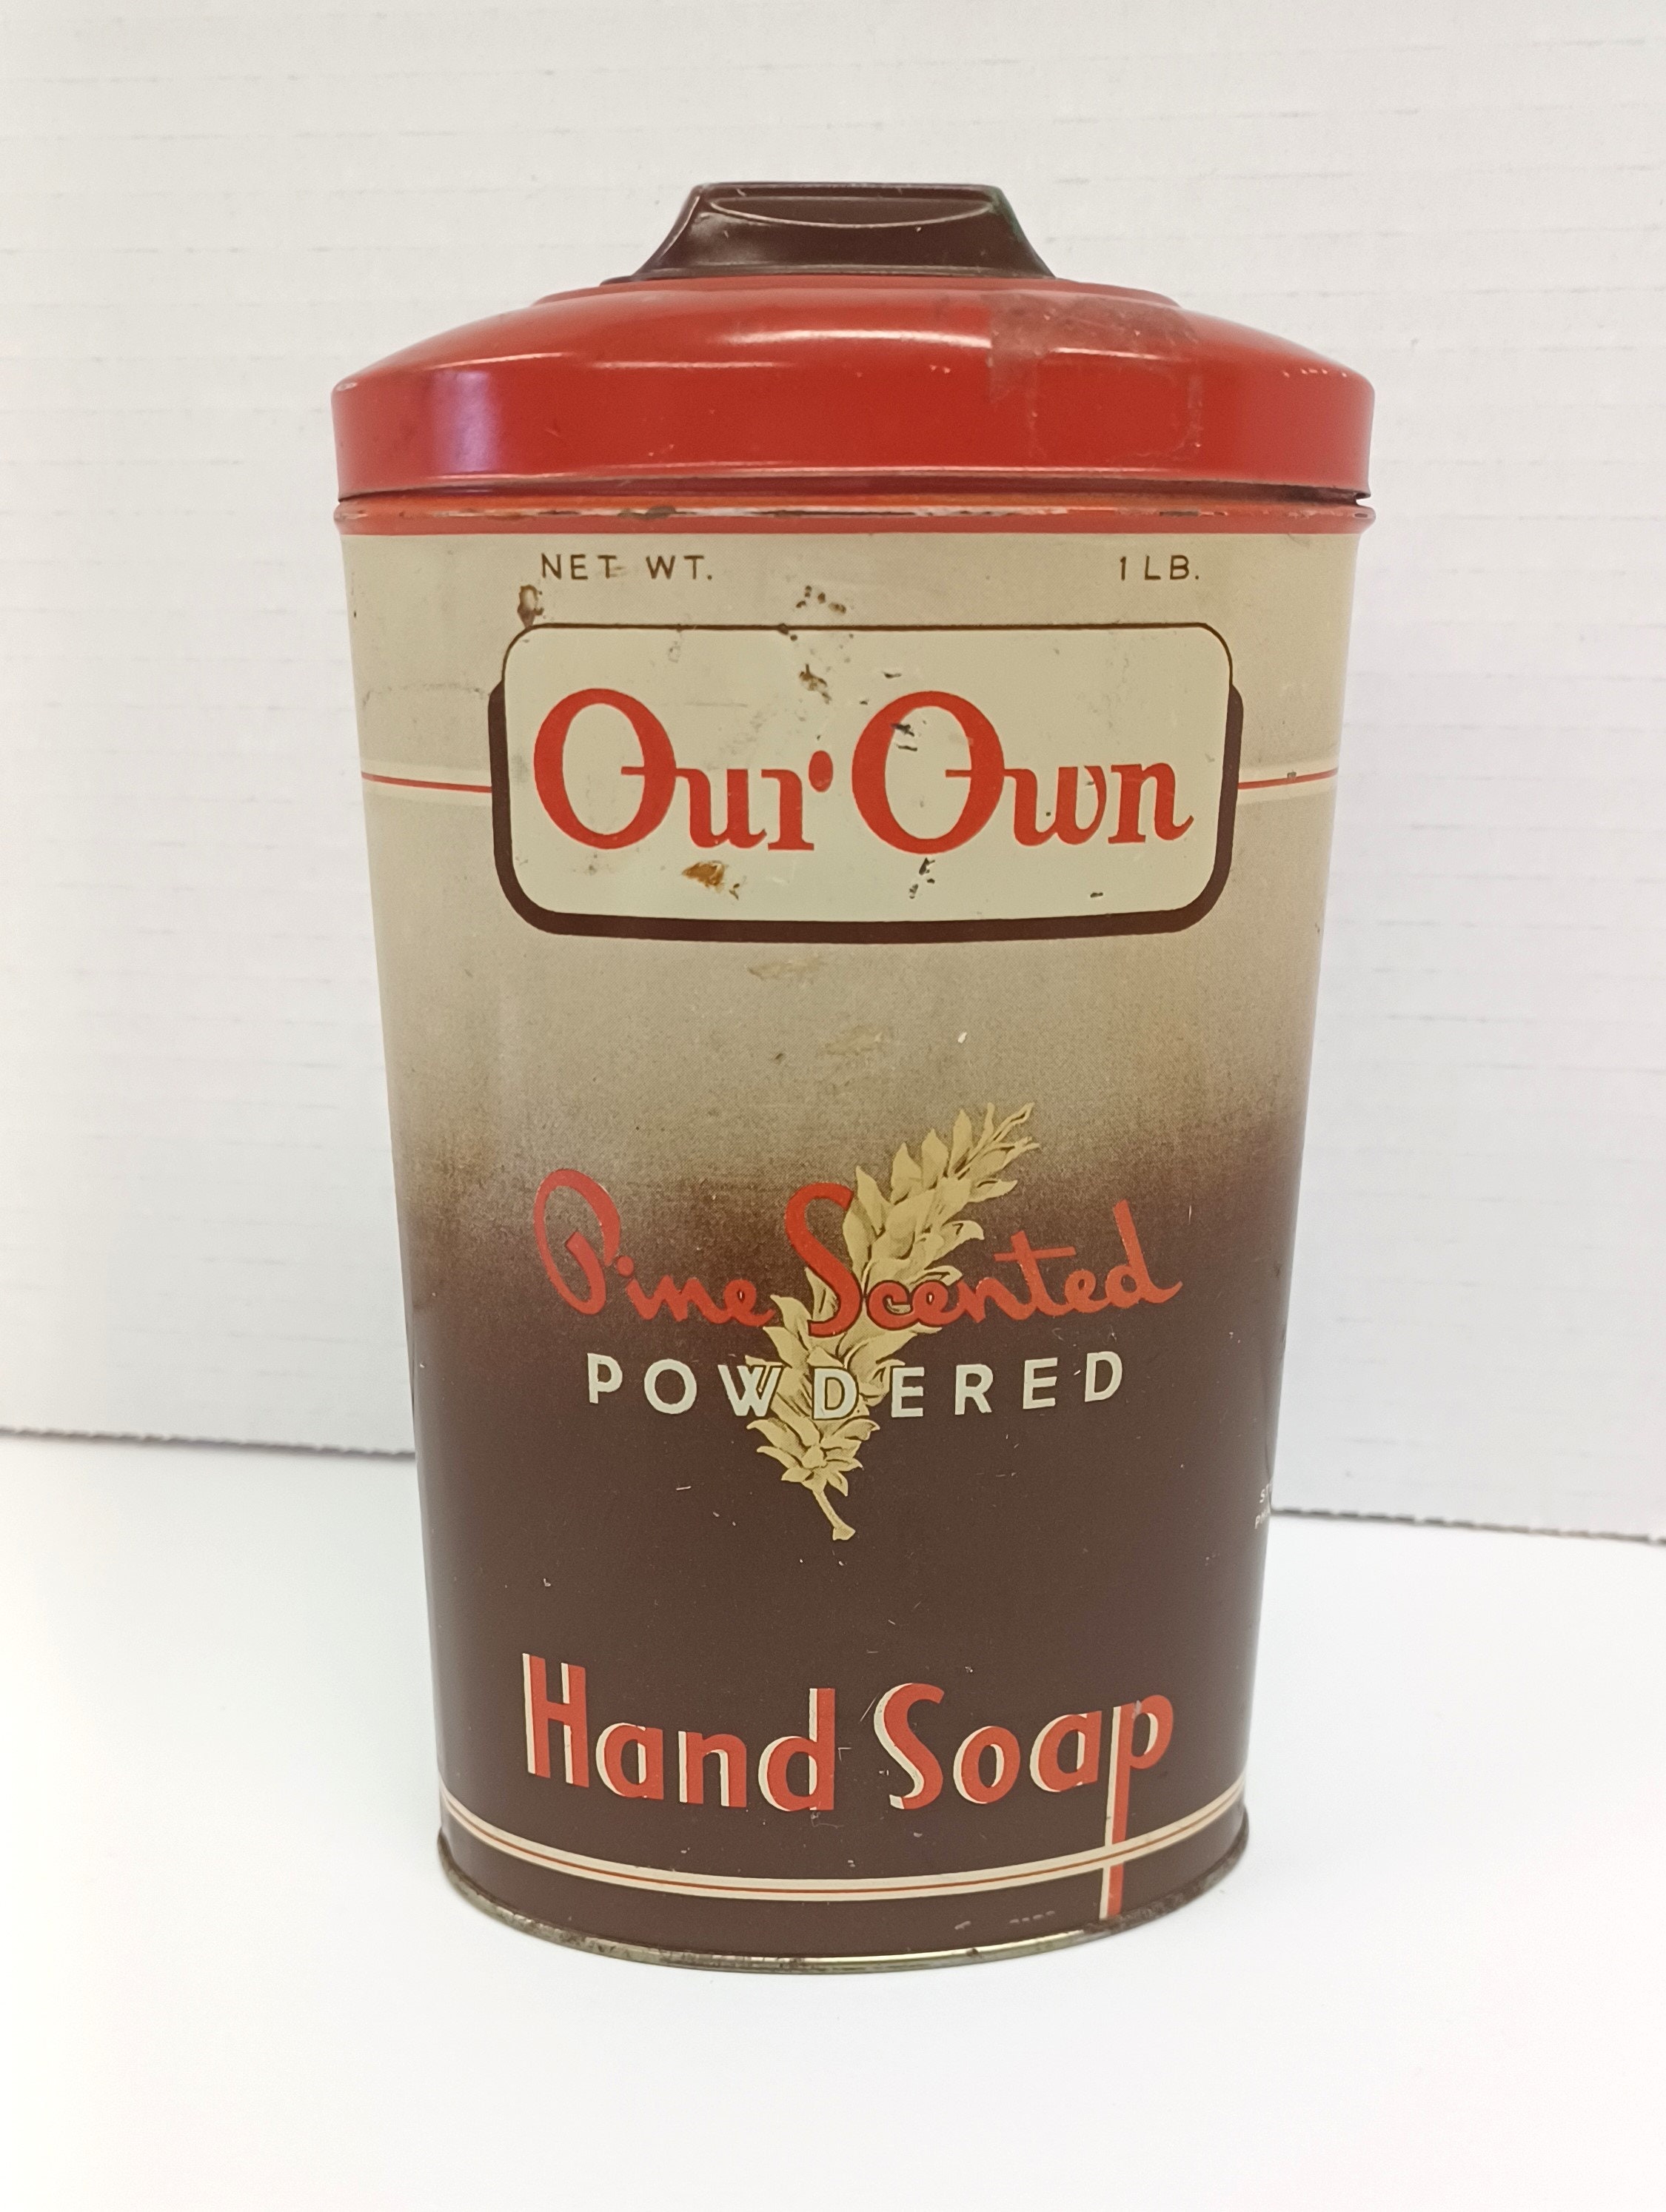 Boraxo Powdered Hand Soap Extra Special Heavy Duty 5 Lb